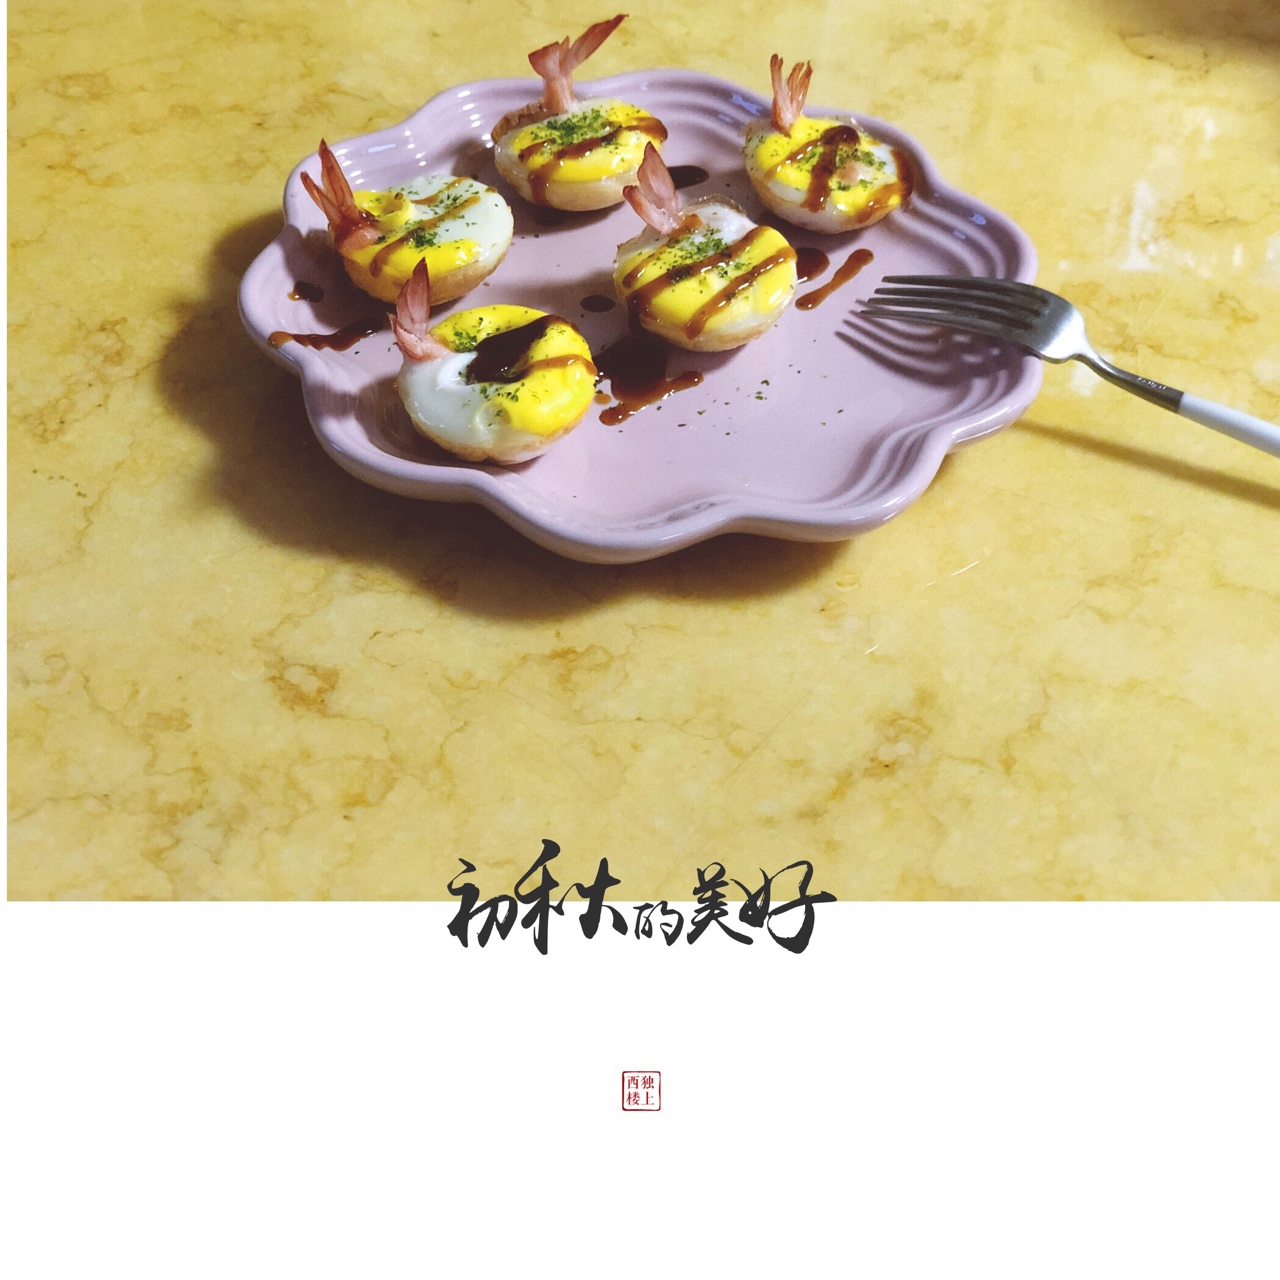 虾扯蛋——台湾夜市小吃